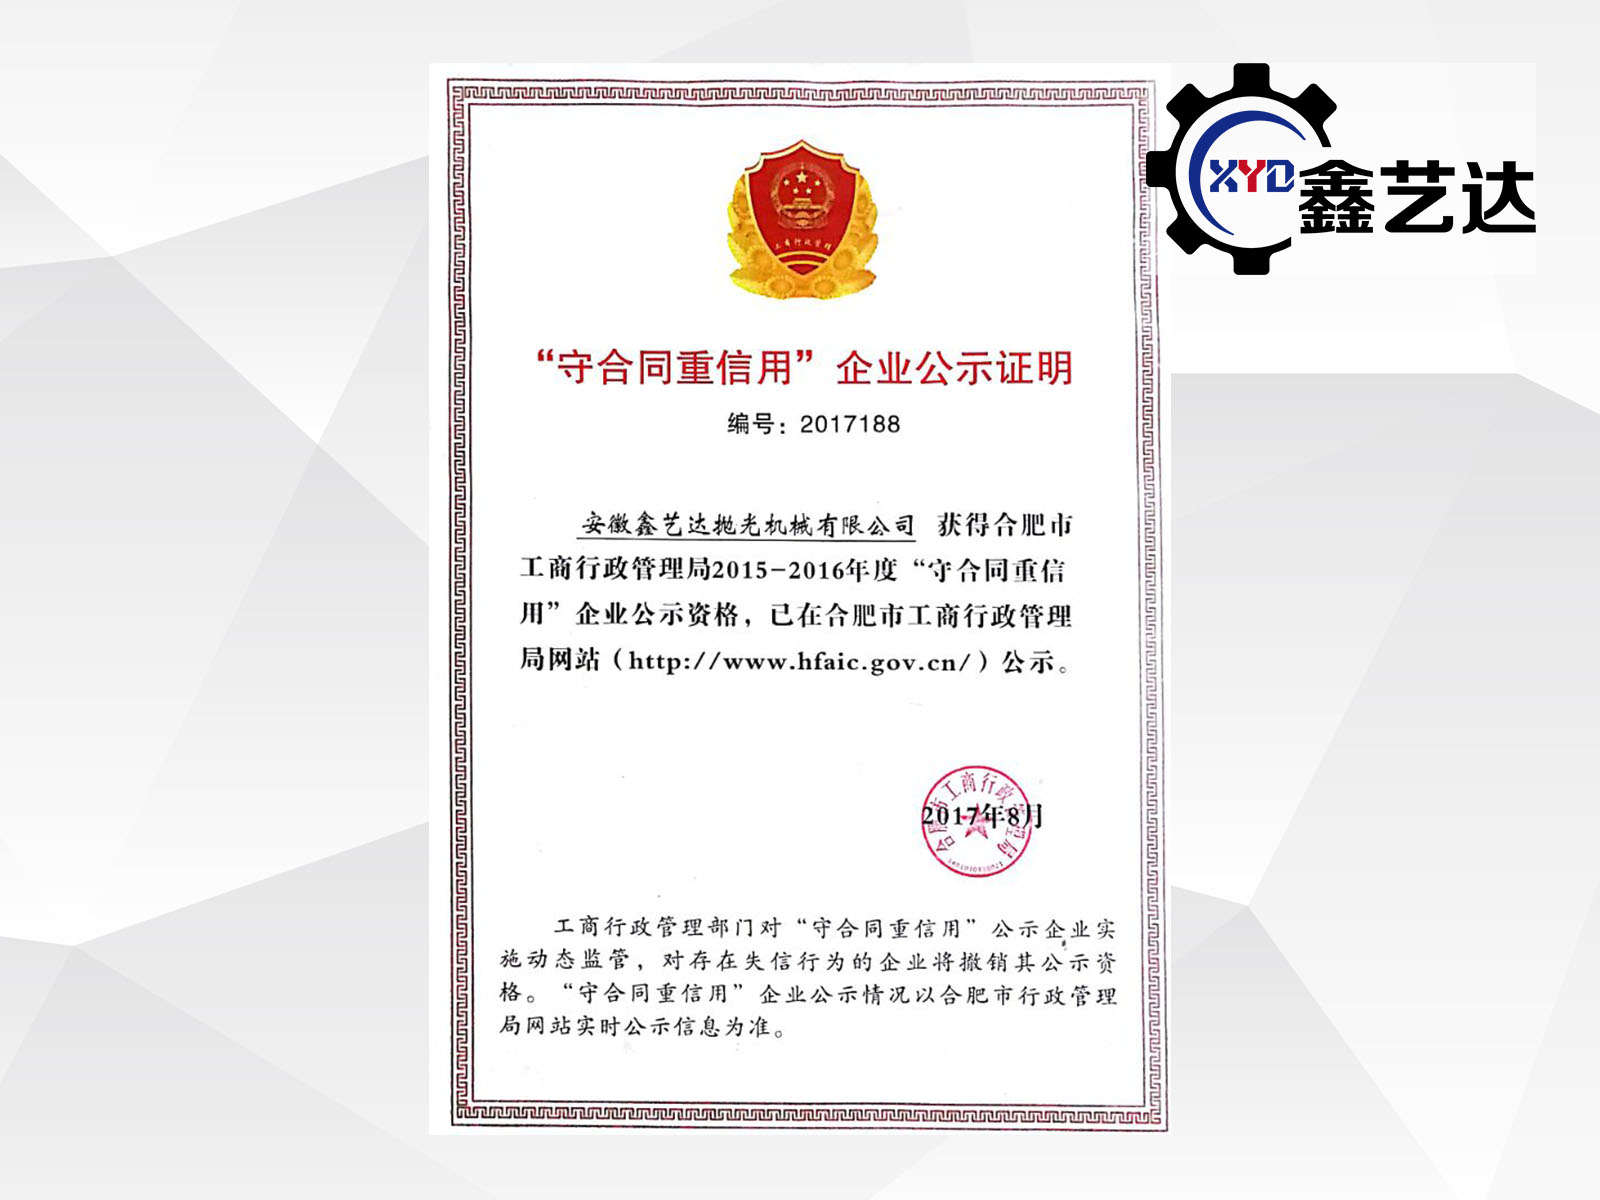 安徽新普京澳门娱乐场网站再次获得“重合同守信用企业”荣誉称号